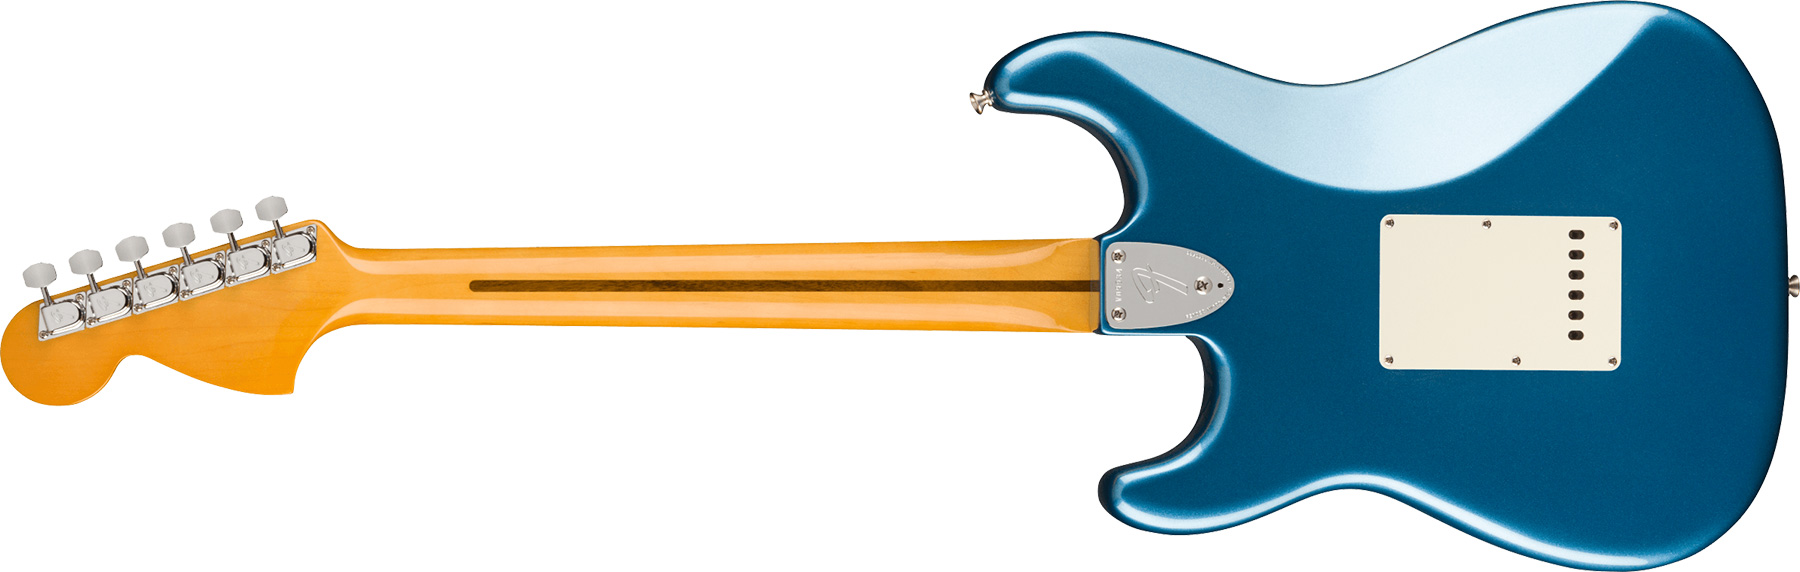 Fender Strat 1973 American Vintage Ii Usa 3s Trem Mn - Lake Placid Blue - E-Gitarre in Str-Form - Variation 1